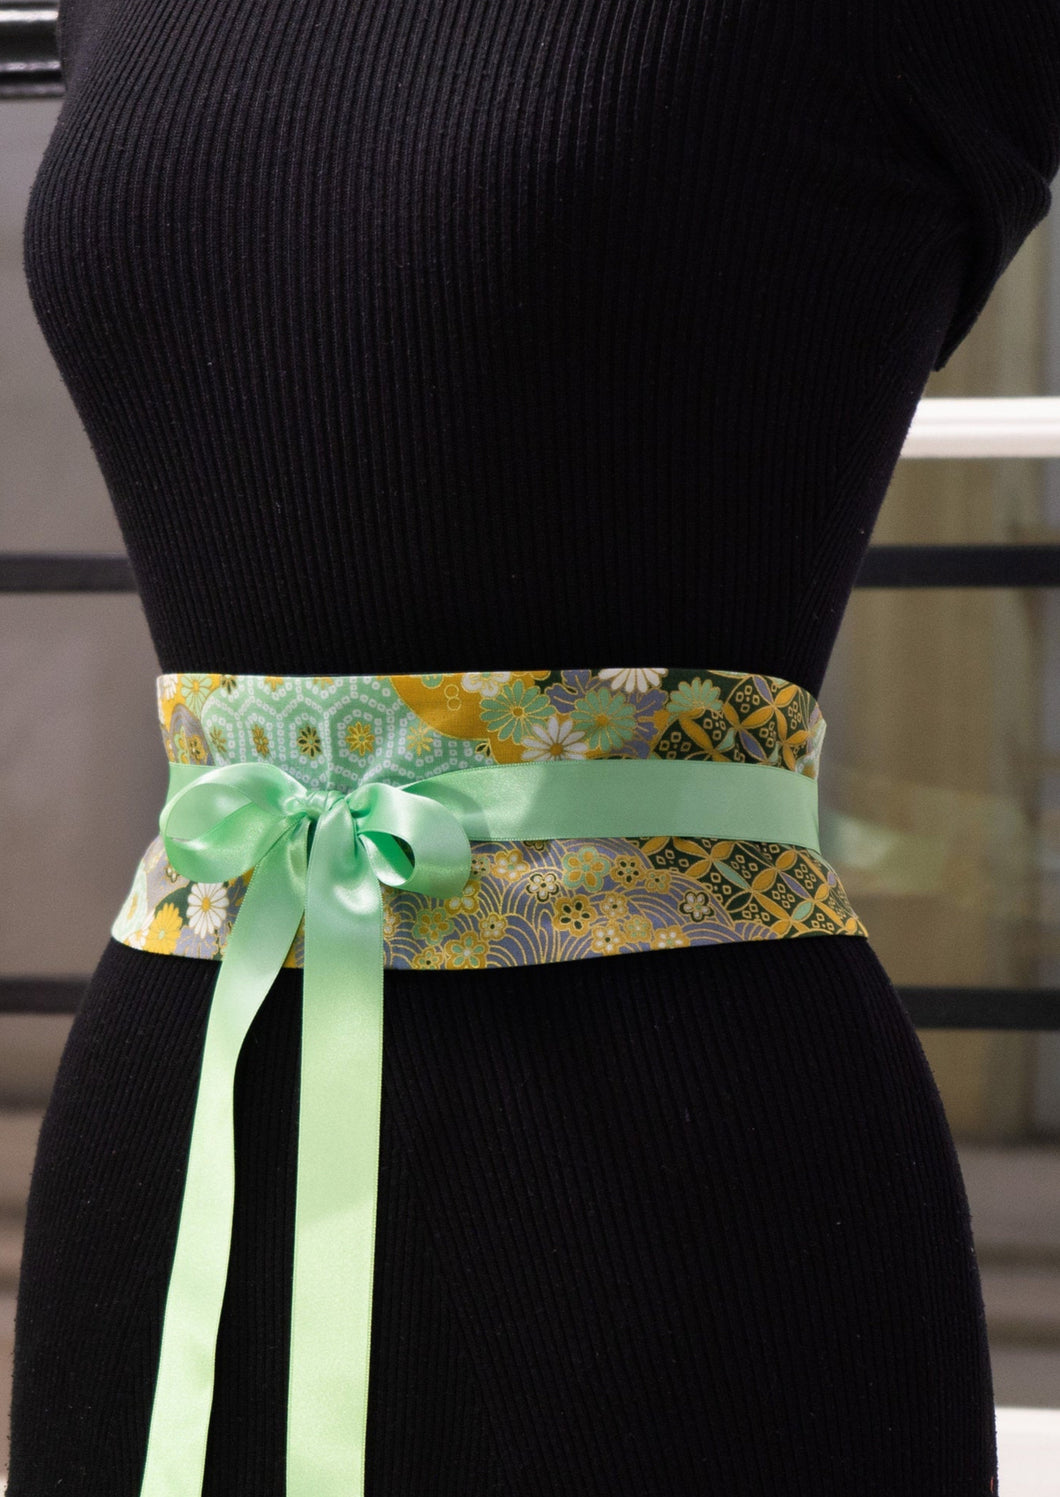 Ravissante ceinture inspiré des obi japonais dans des tons de vert, bronze et gris bleu.  Elle vous permettra d’égayer une tenue simple, de donner une touche japonaise à un vêtement et surtout de vous sentir plus féminine.